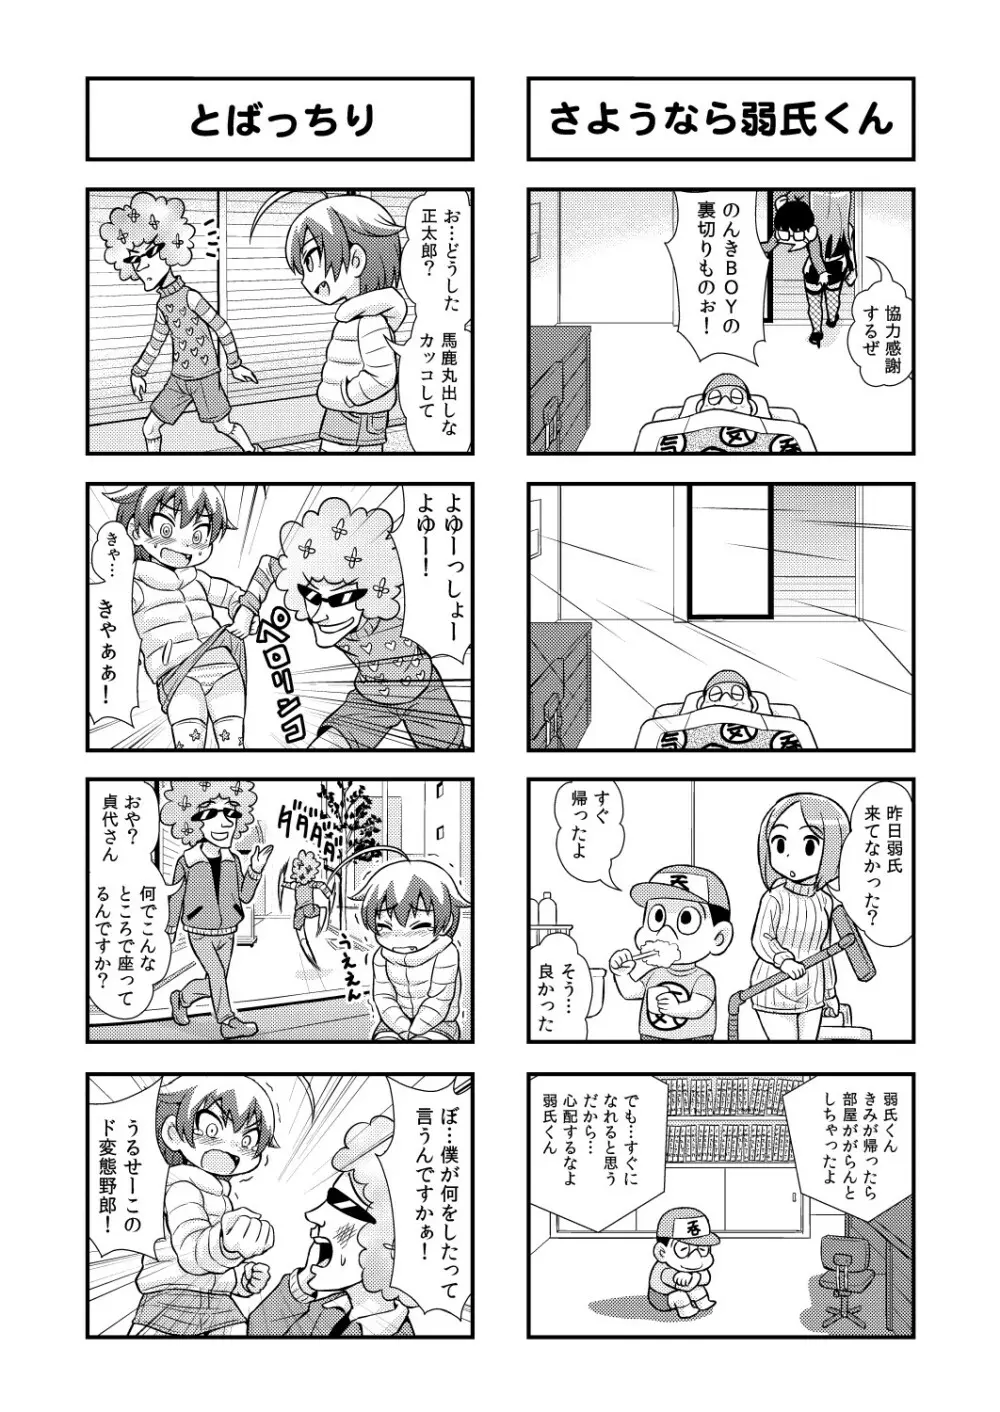 のんきBOY 1-48 - page50